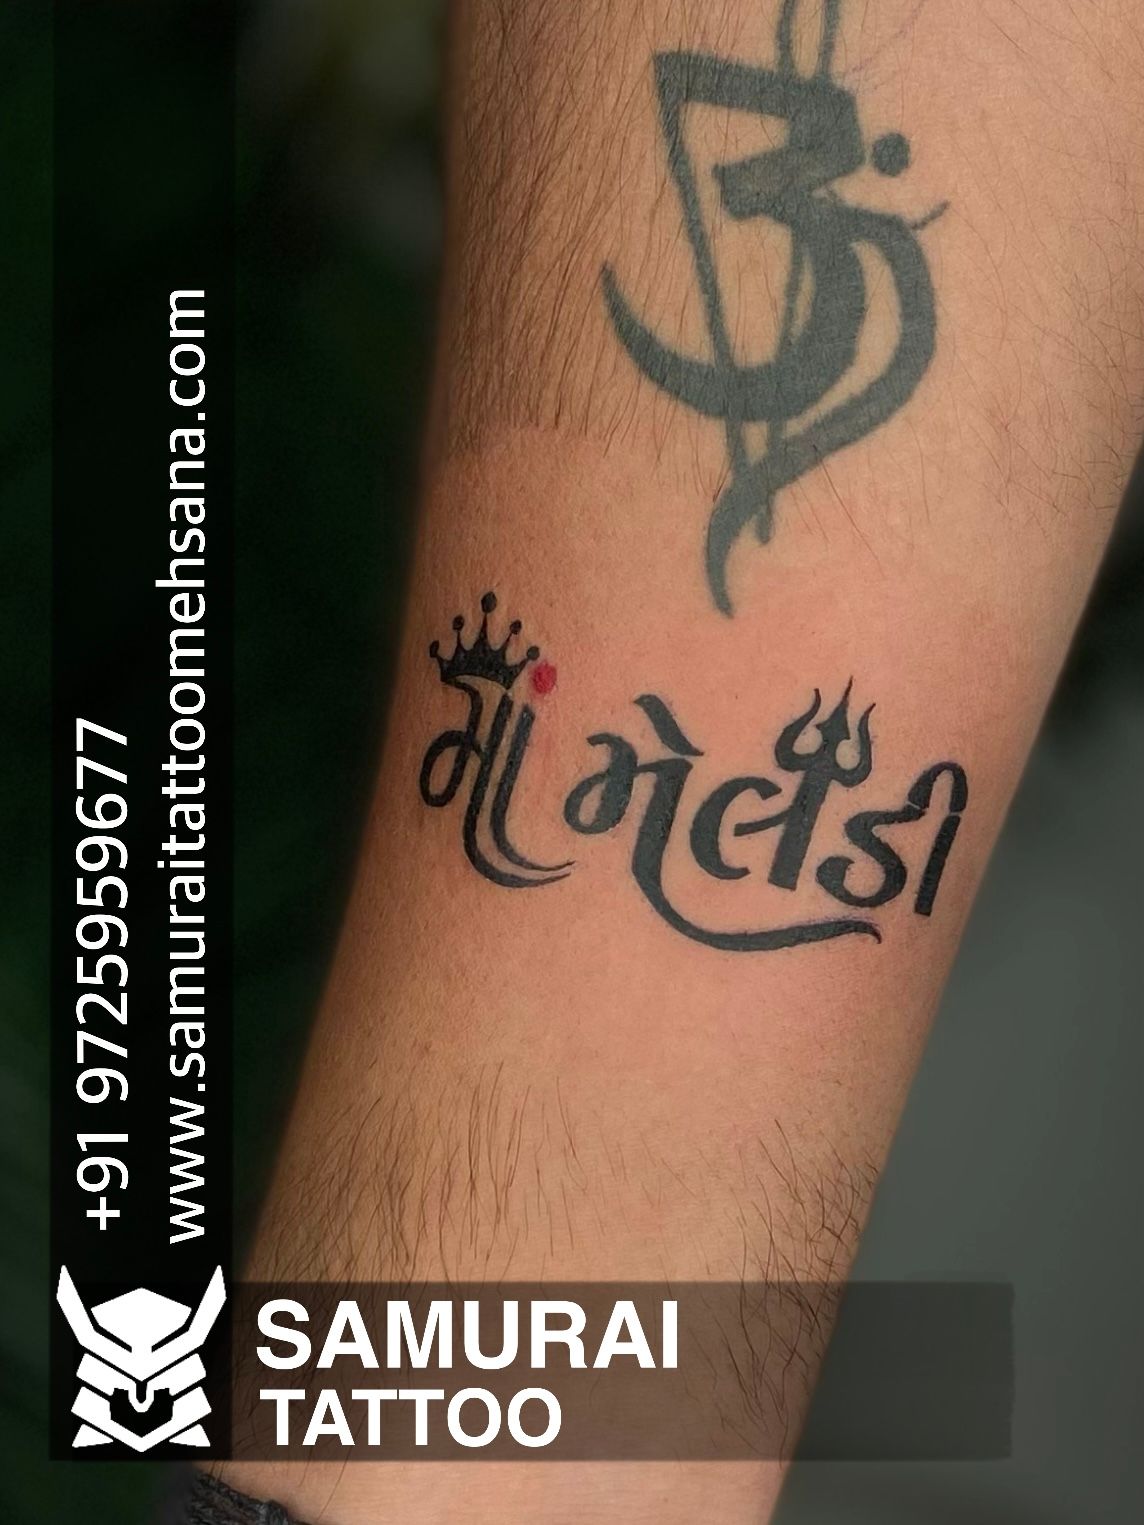 Tattoo uploaded by Vipul Chaudhary • Flute with feather tattoo |Tattoo for  krishna |Dwarkadhish tattoo |Lord krishna tattoo • Tattoodo